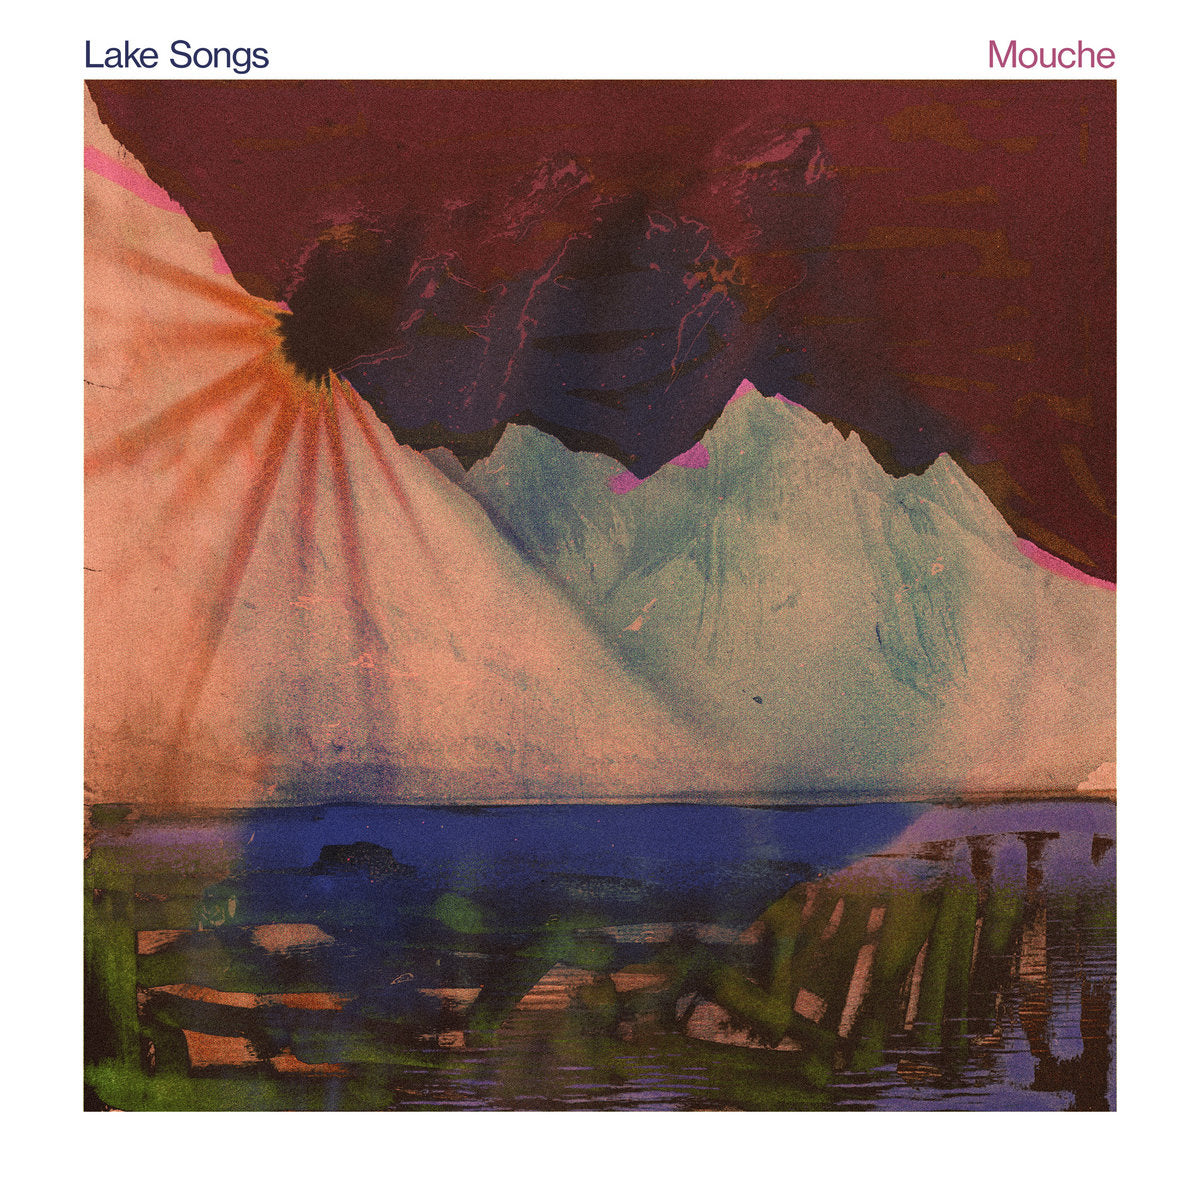 MOUCHE - "LAKE SONGS" LP